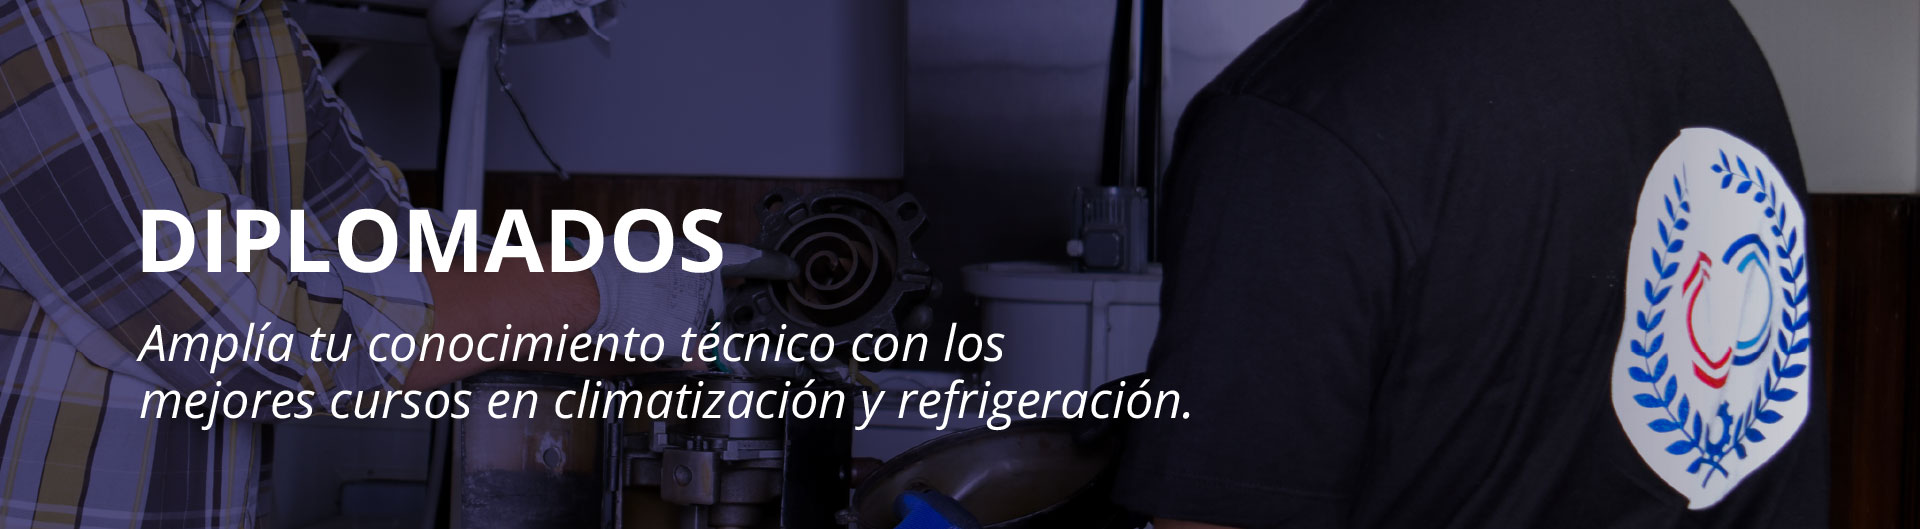 diplomados tecnico laboral por competencias en mecanico de aire acondicionado y refrigeracion politecnico colombiano de climatizacion y refigeracion